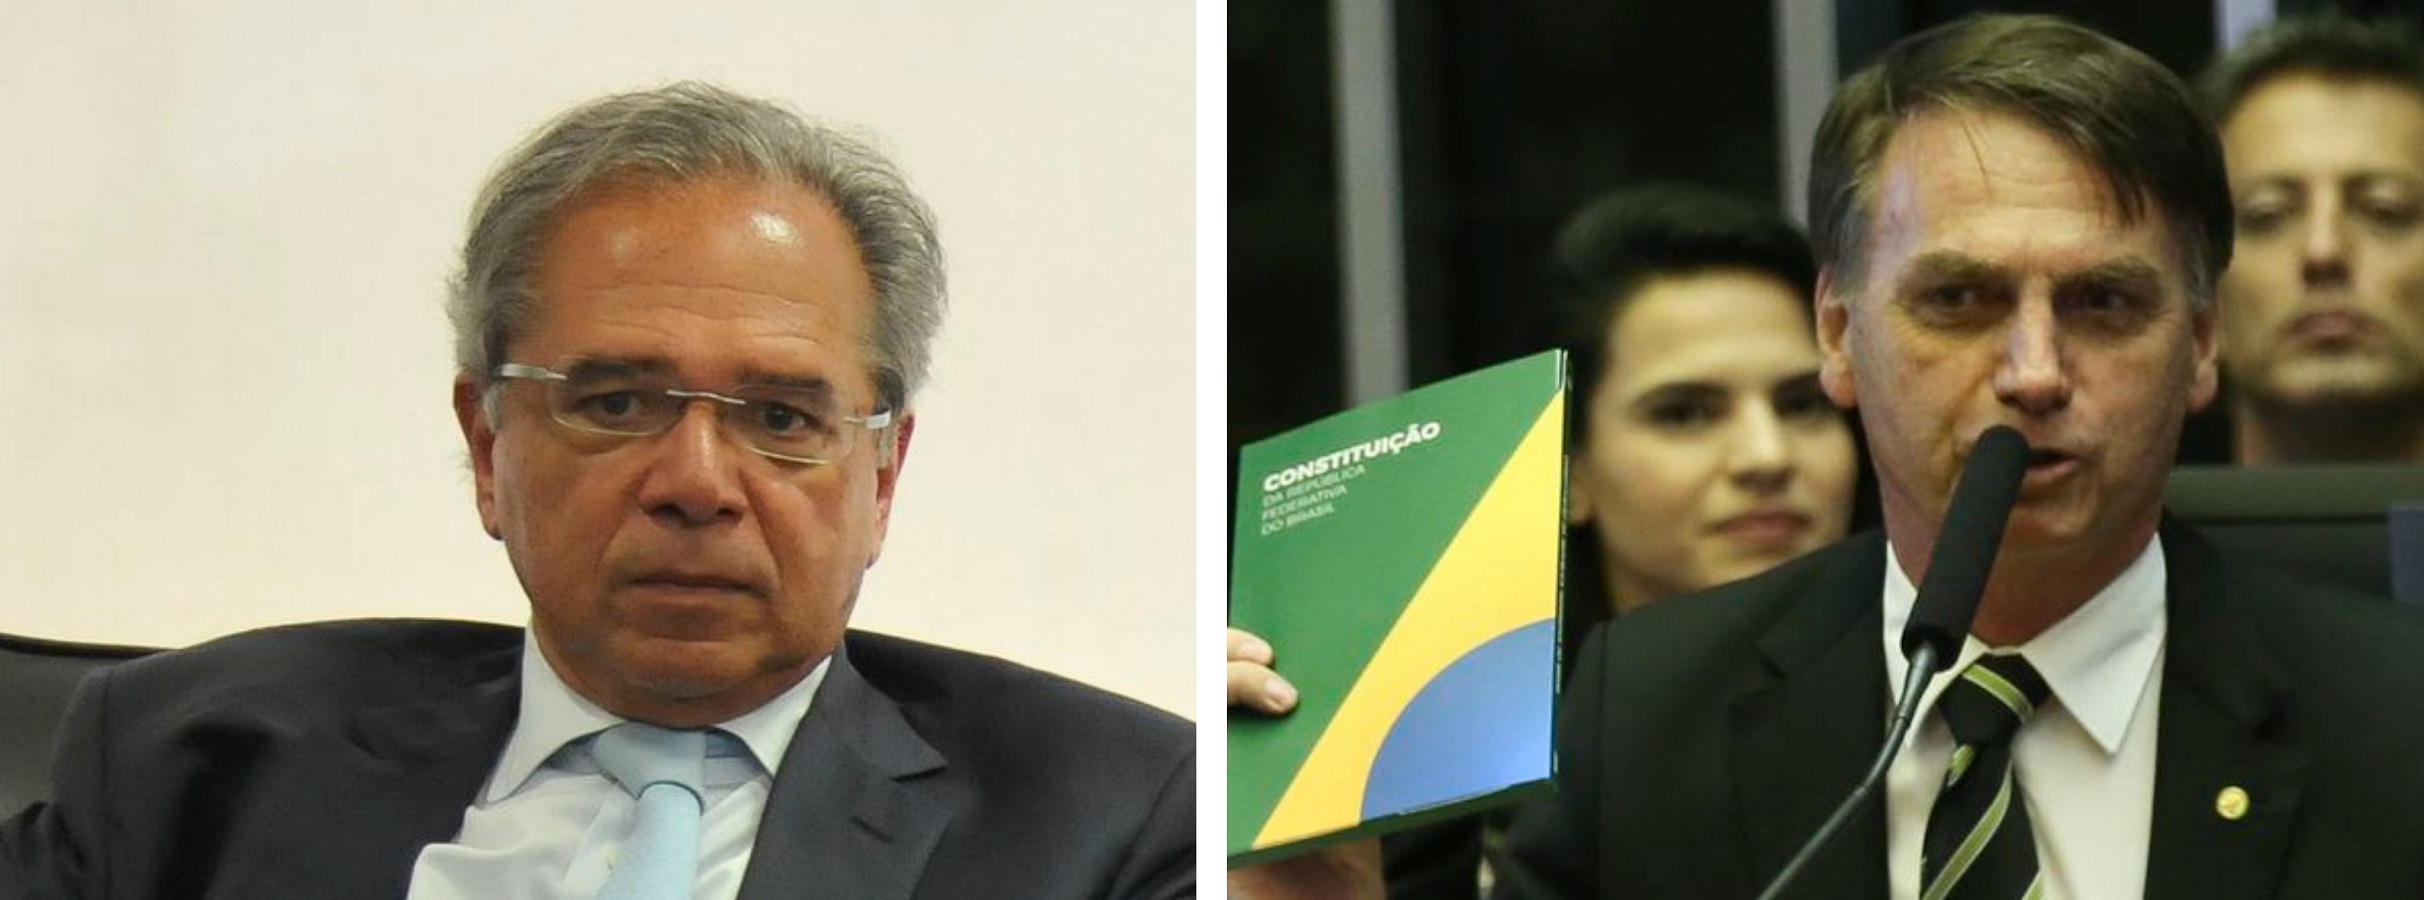 Por que Bolsonaro e Paulo Guedes querem a reforma da previdência?